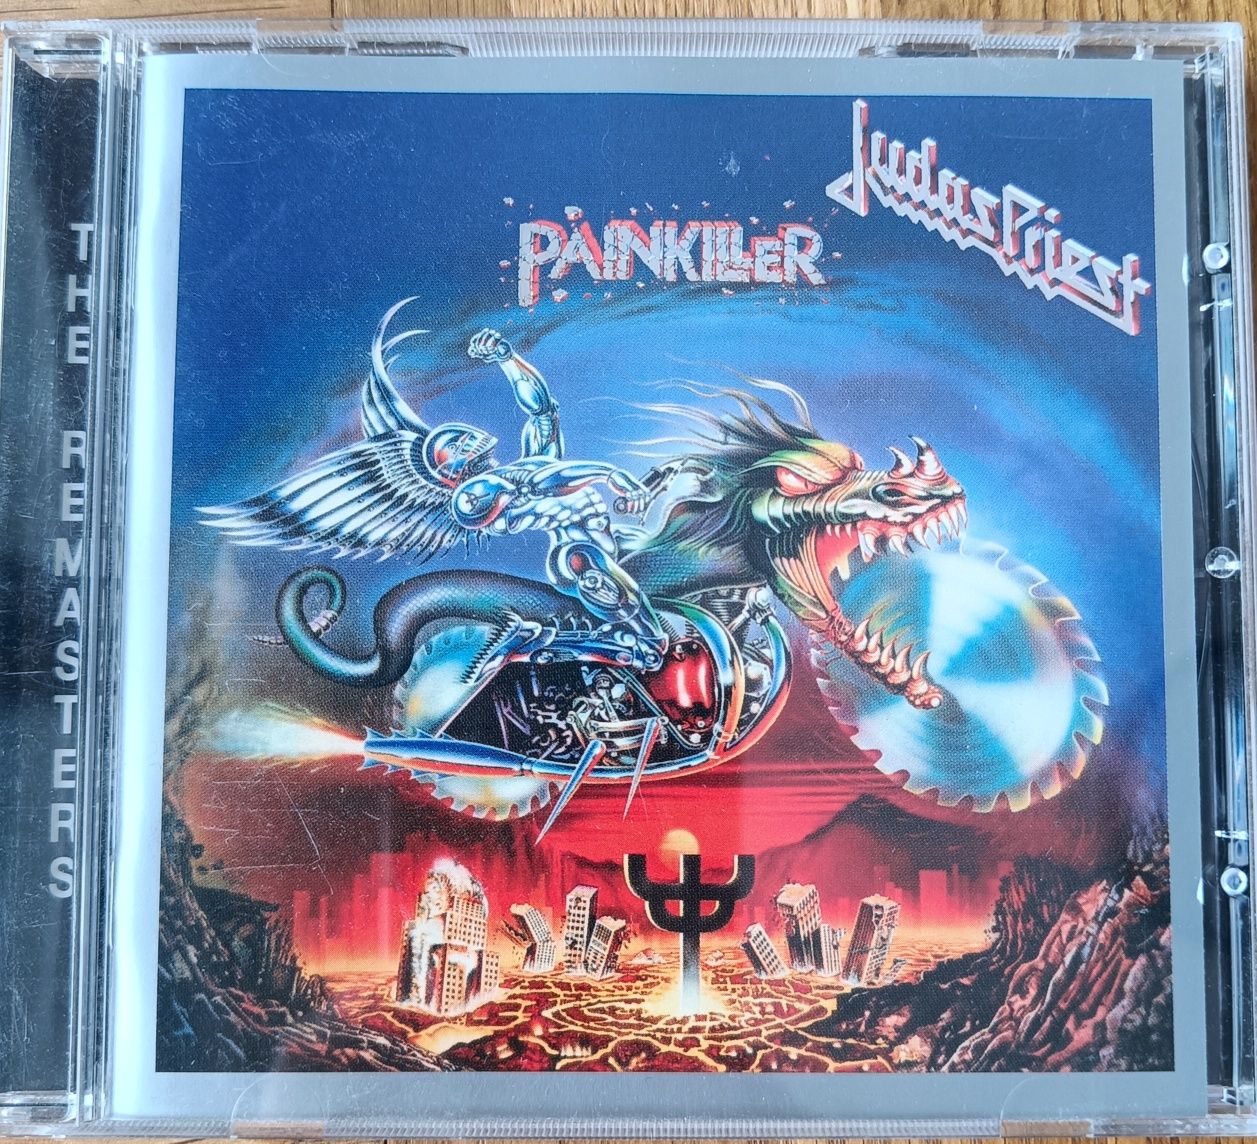 Judas Priest "Painkiller" CD